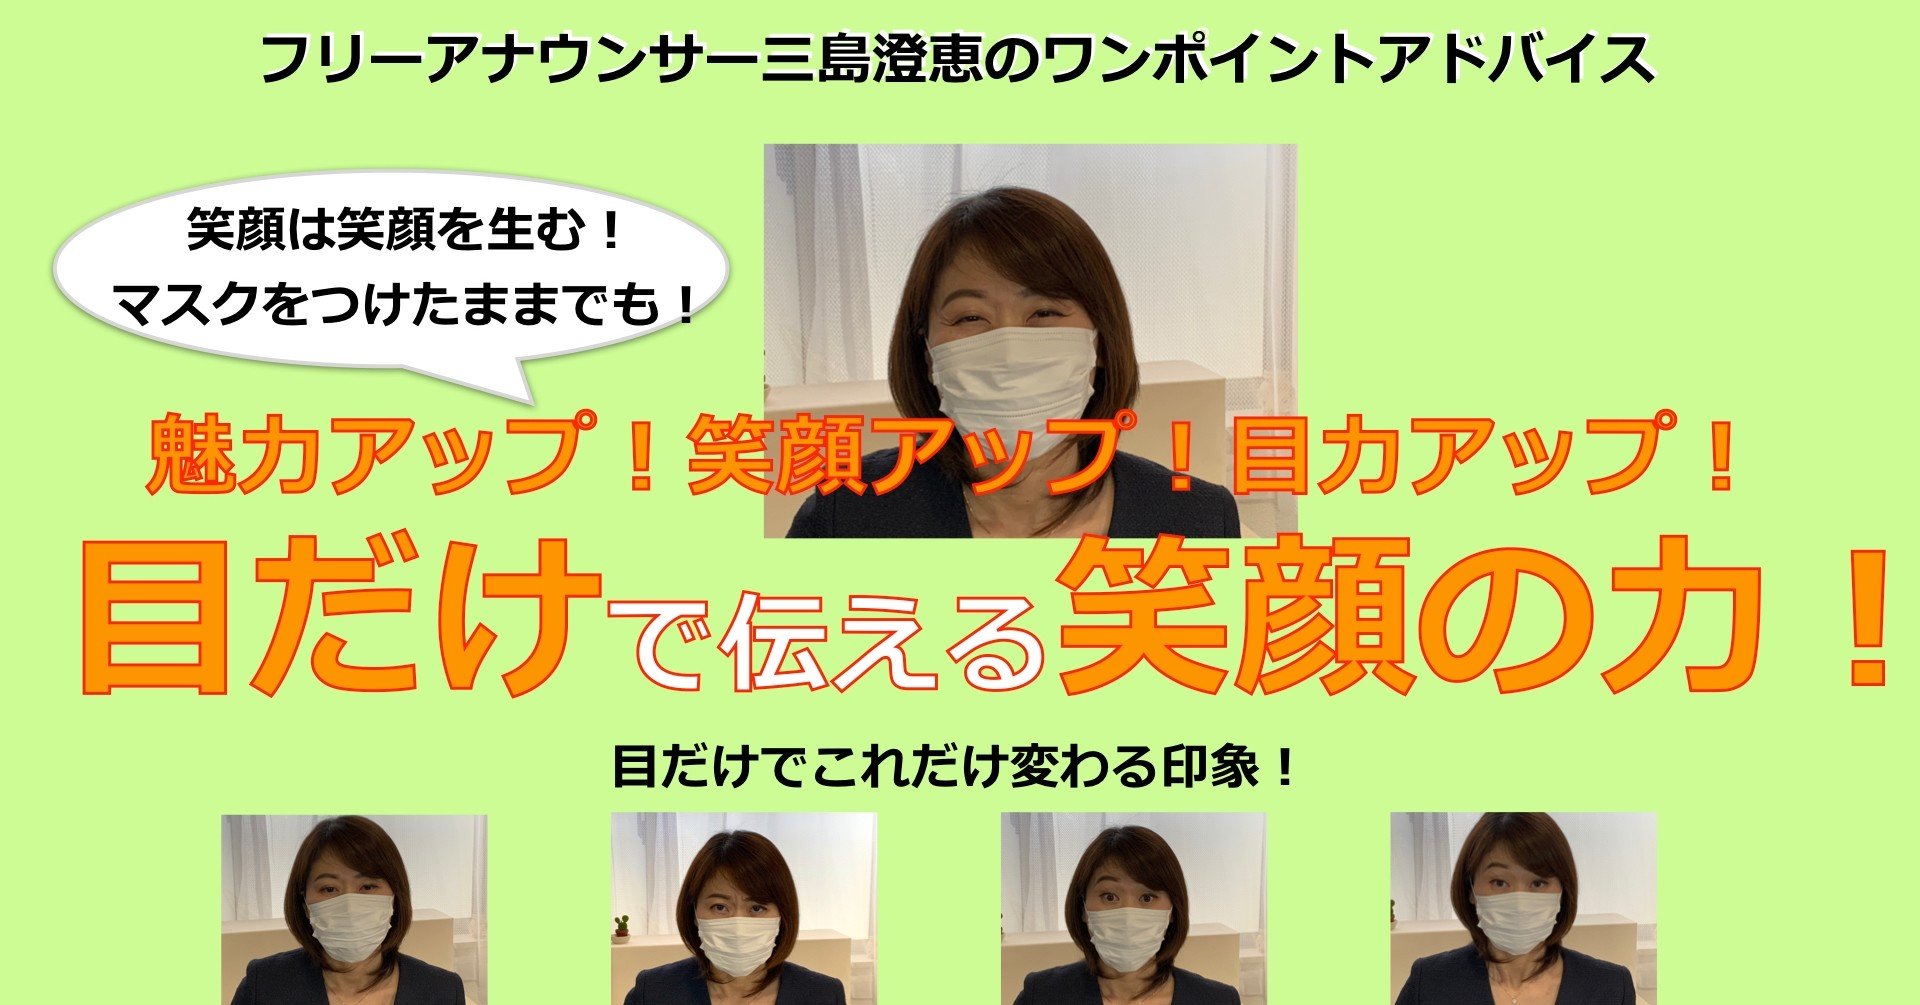 笑顔は笑顔を生む マスクをつけていても笑顔を フリーアナウンサー三島澄恵 Note